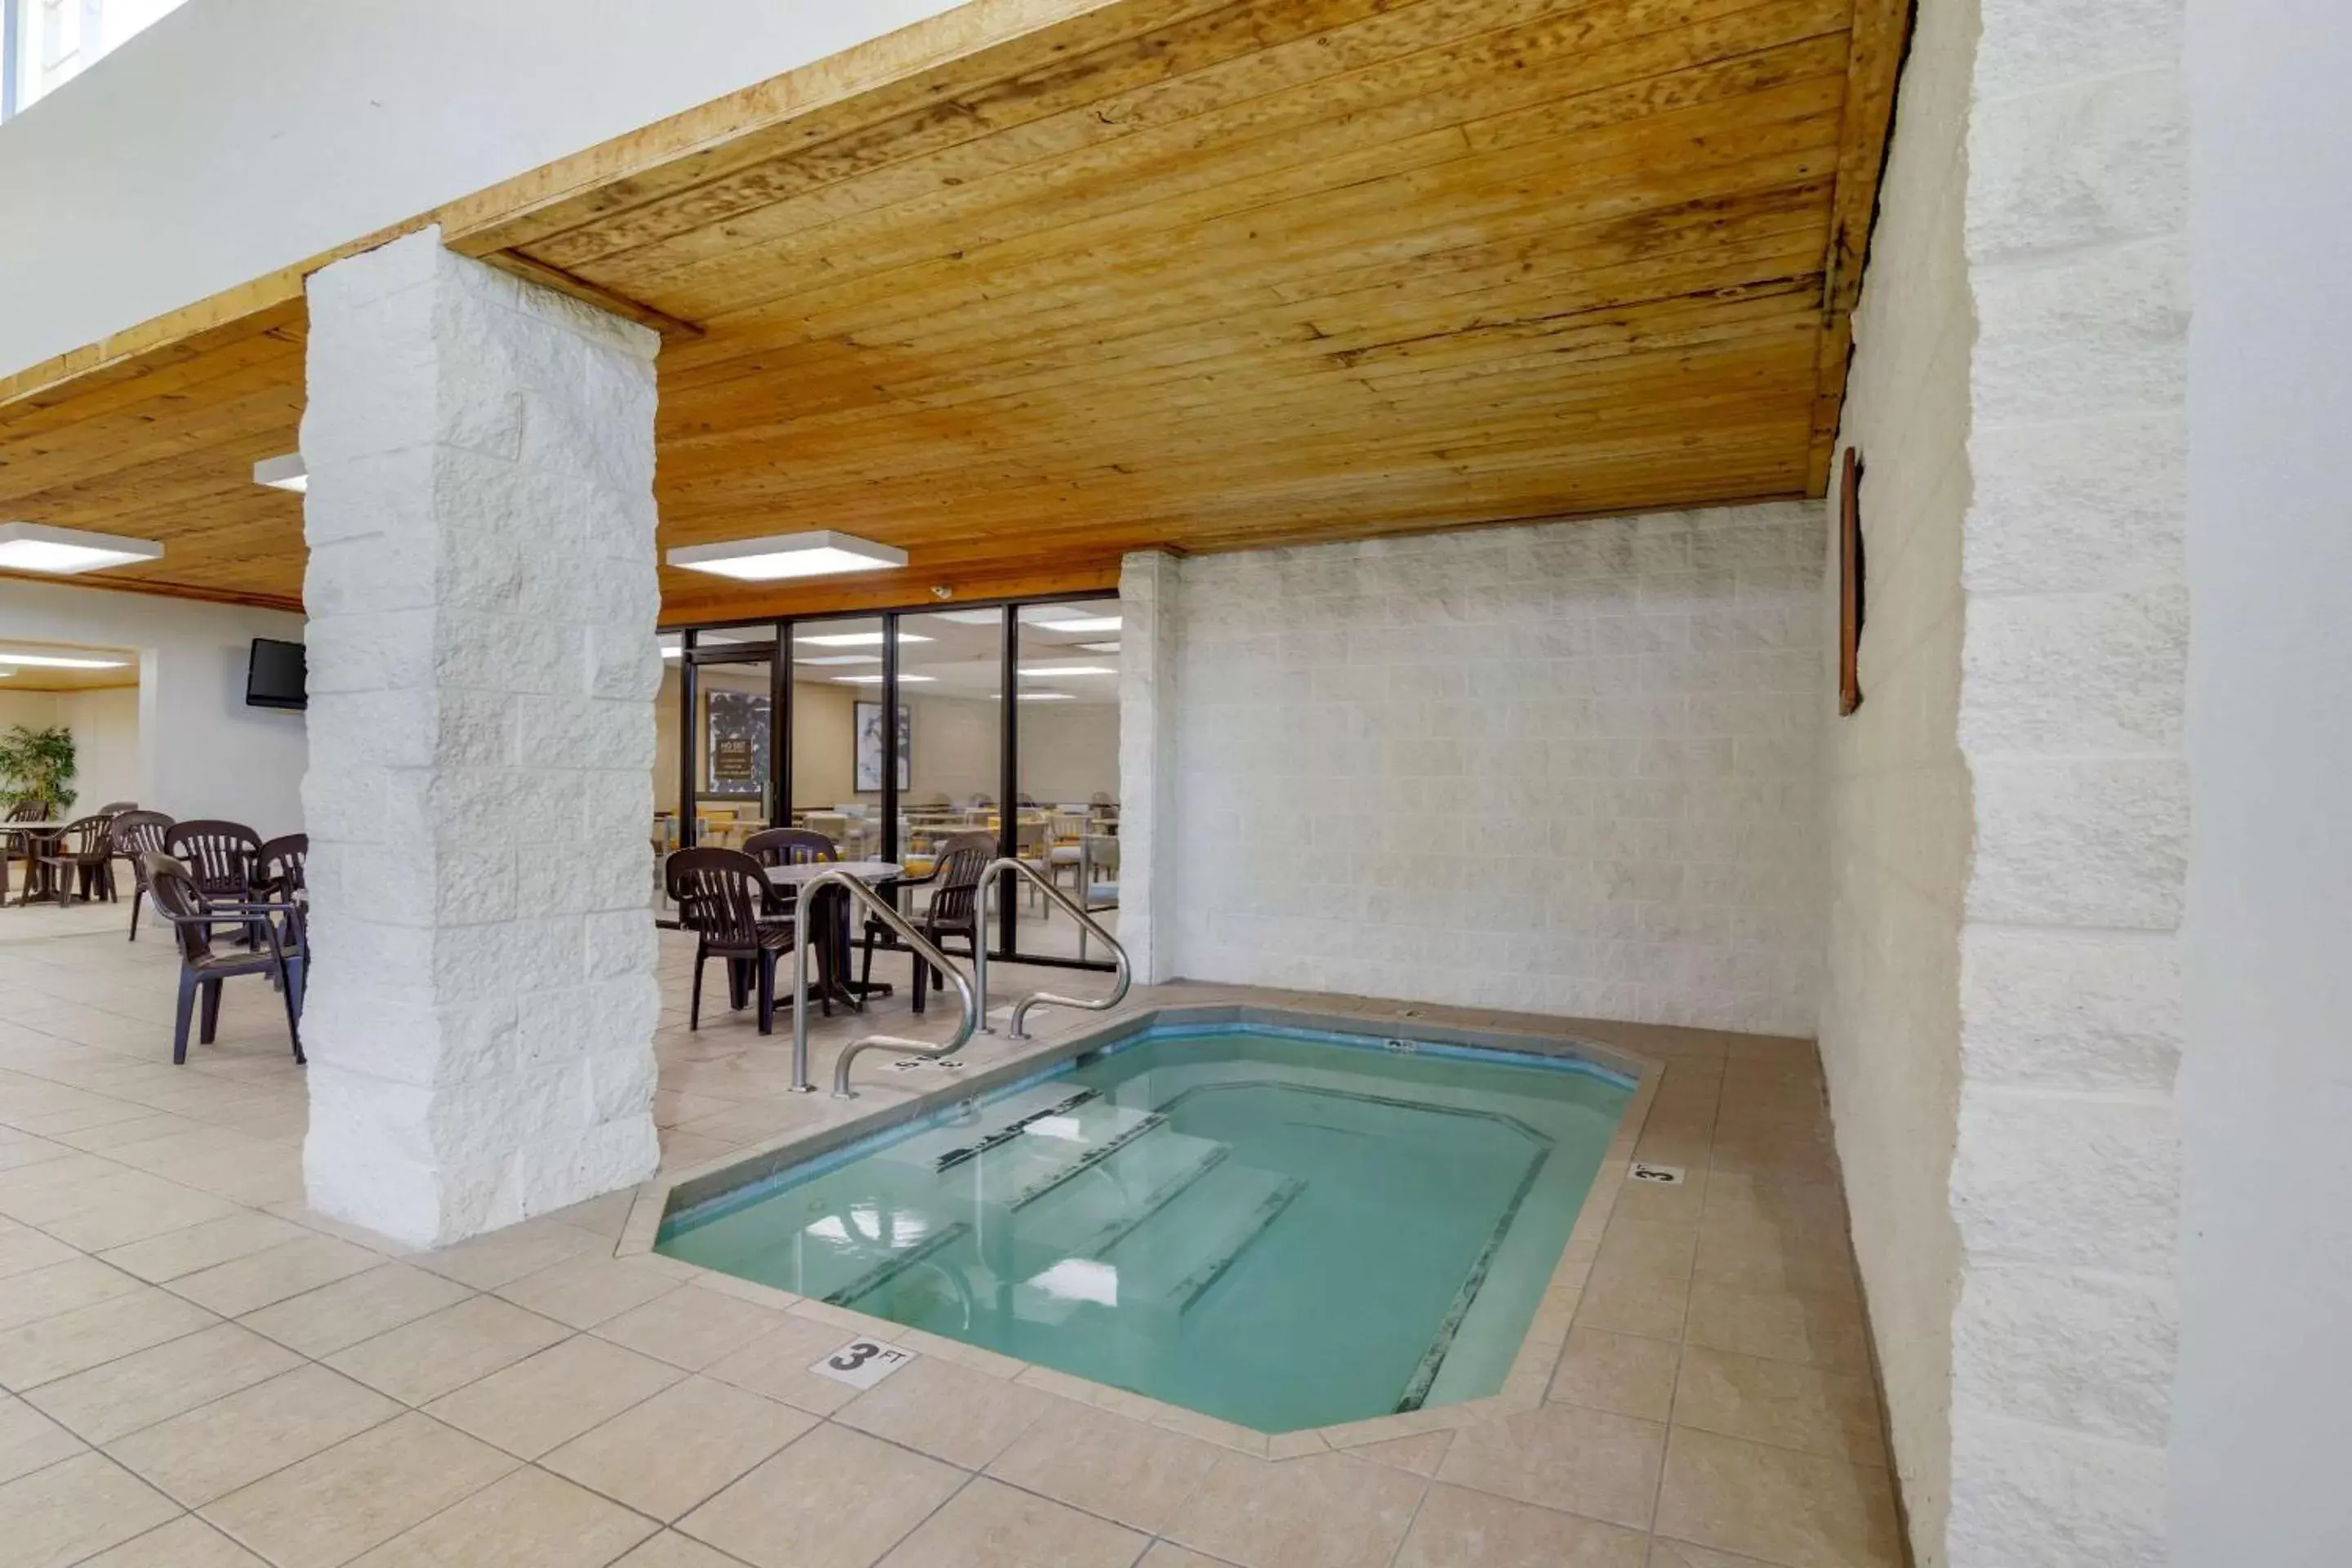 Swimming Pool in Comfort Inn Bismarck